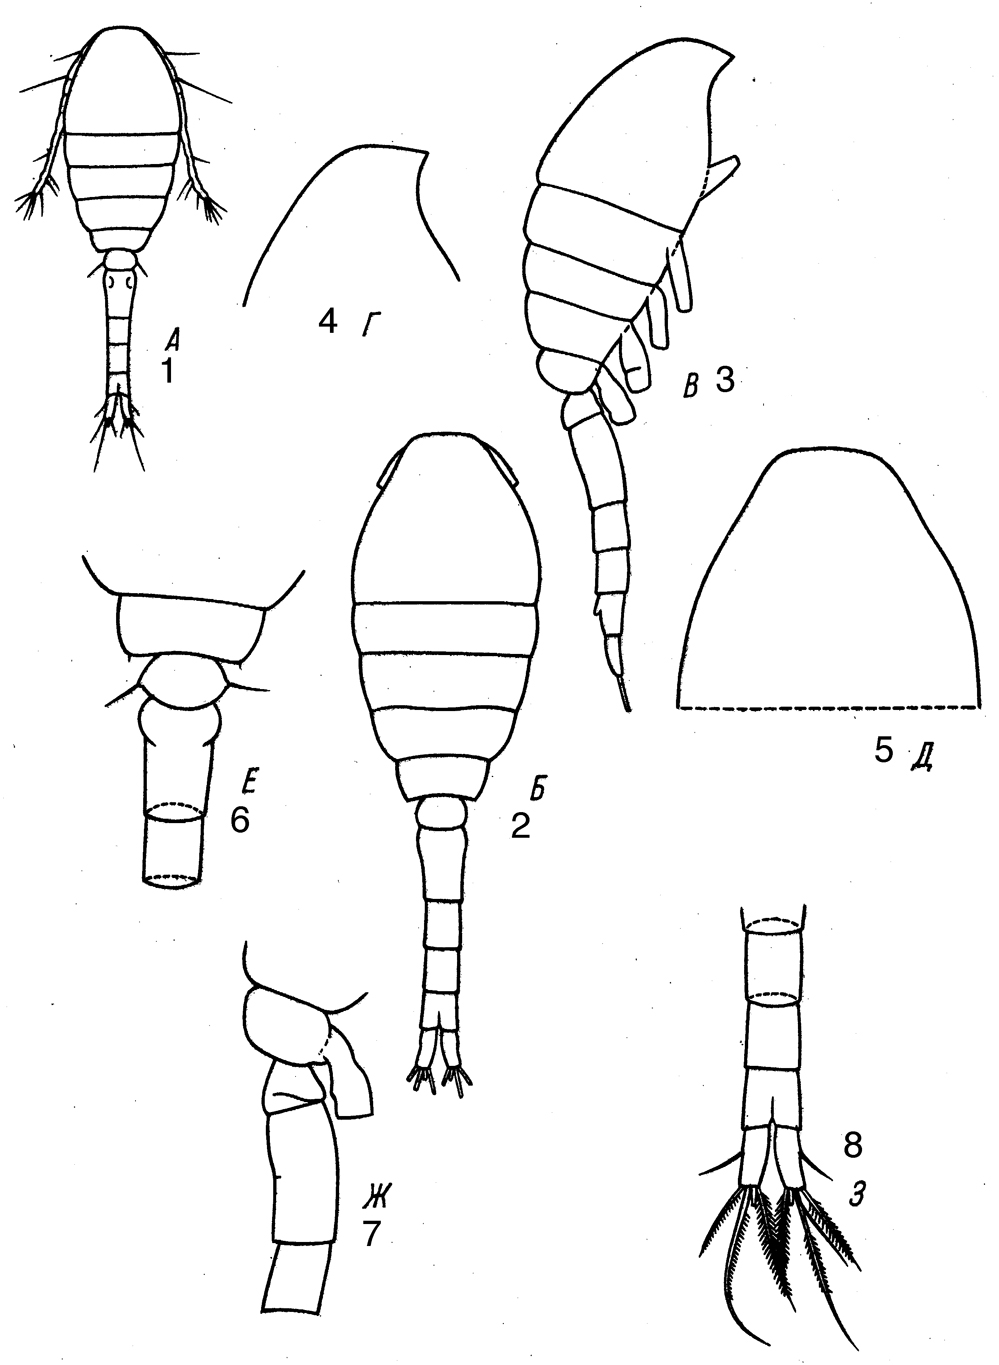 Espce Dioithona rigida - Planche 10 de figures morphologiques